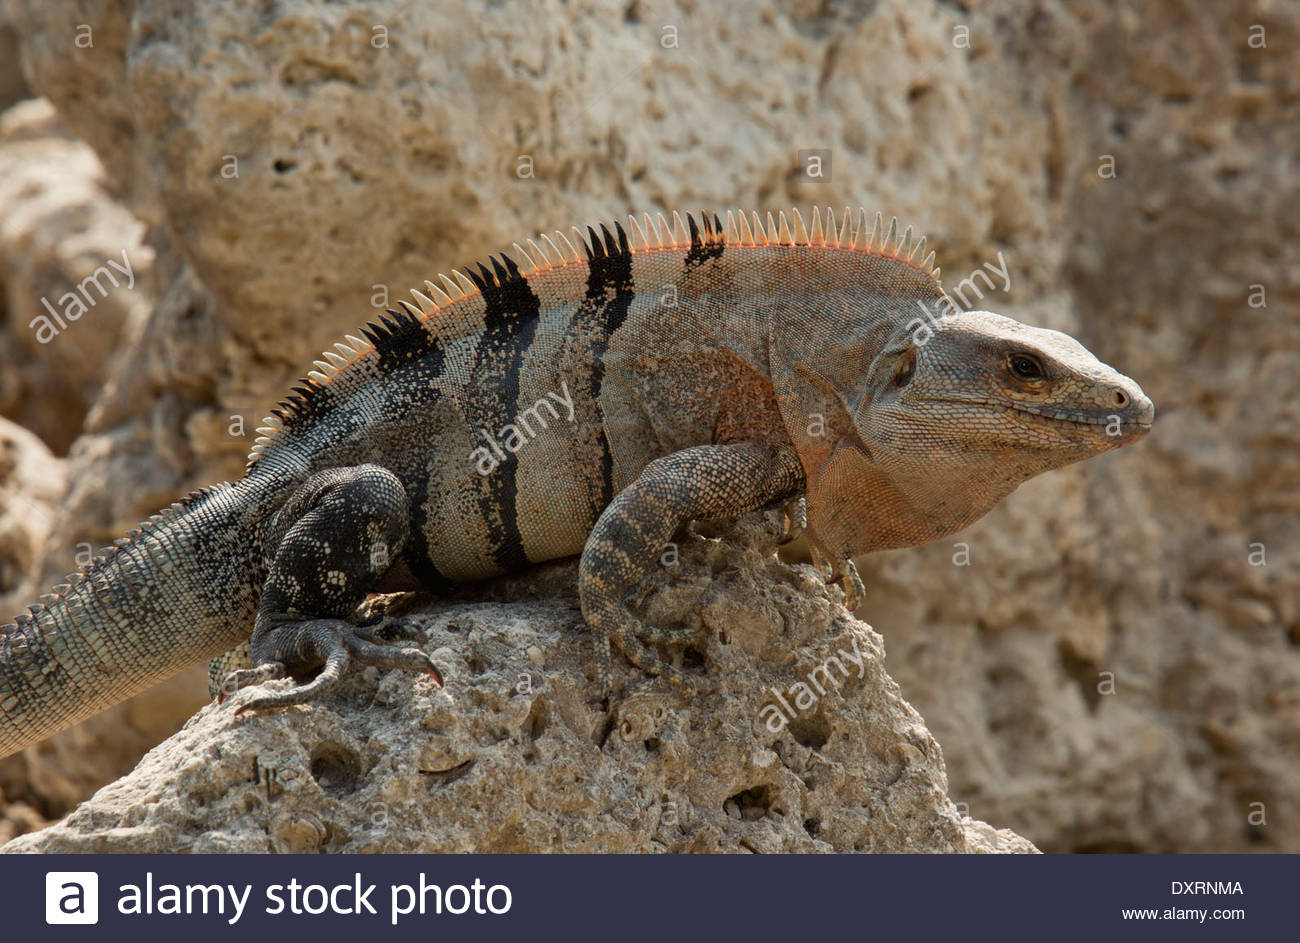 Images of Black Spiny Tailed Iguana | 1300x943